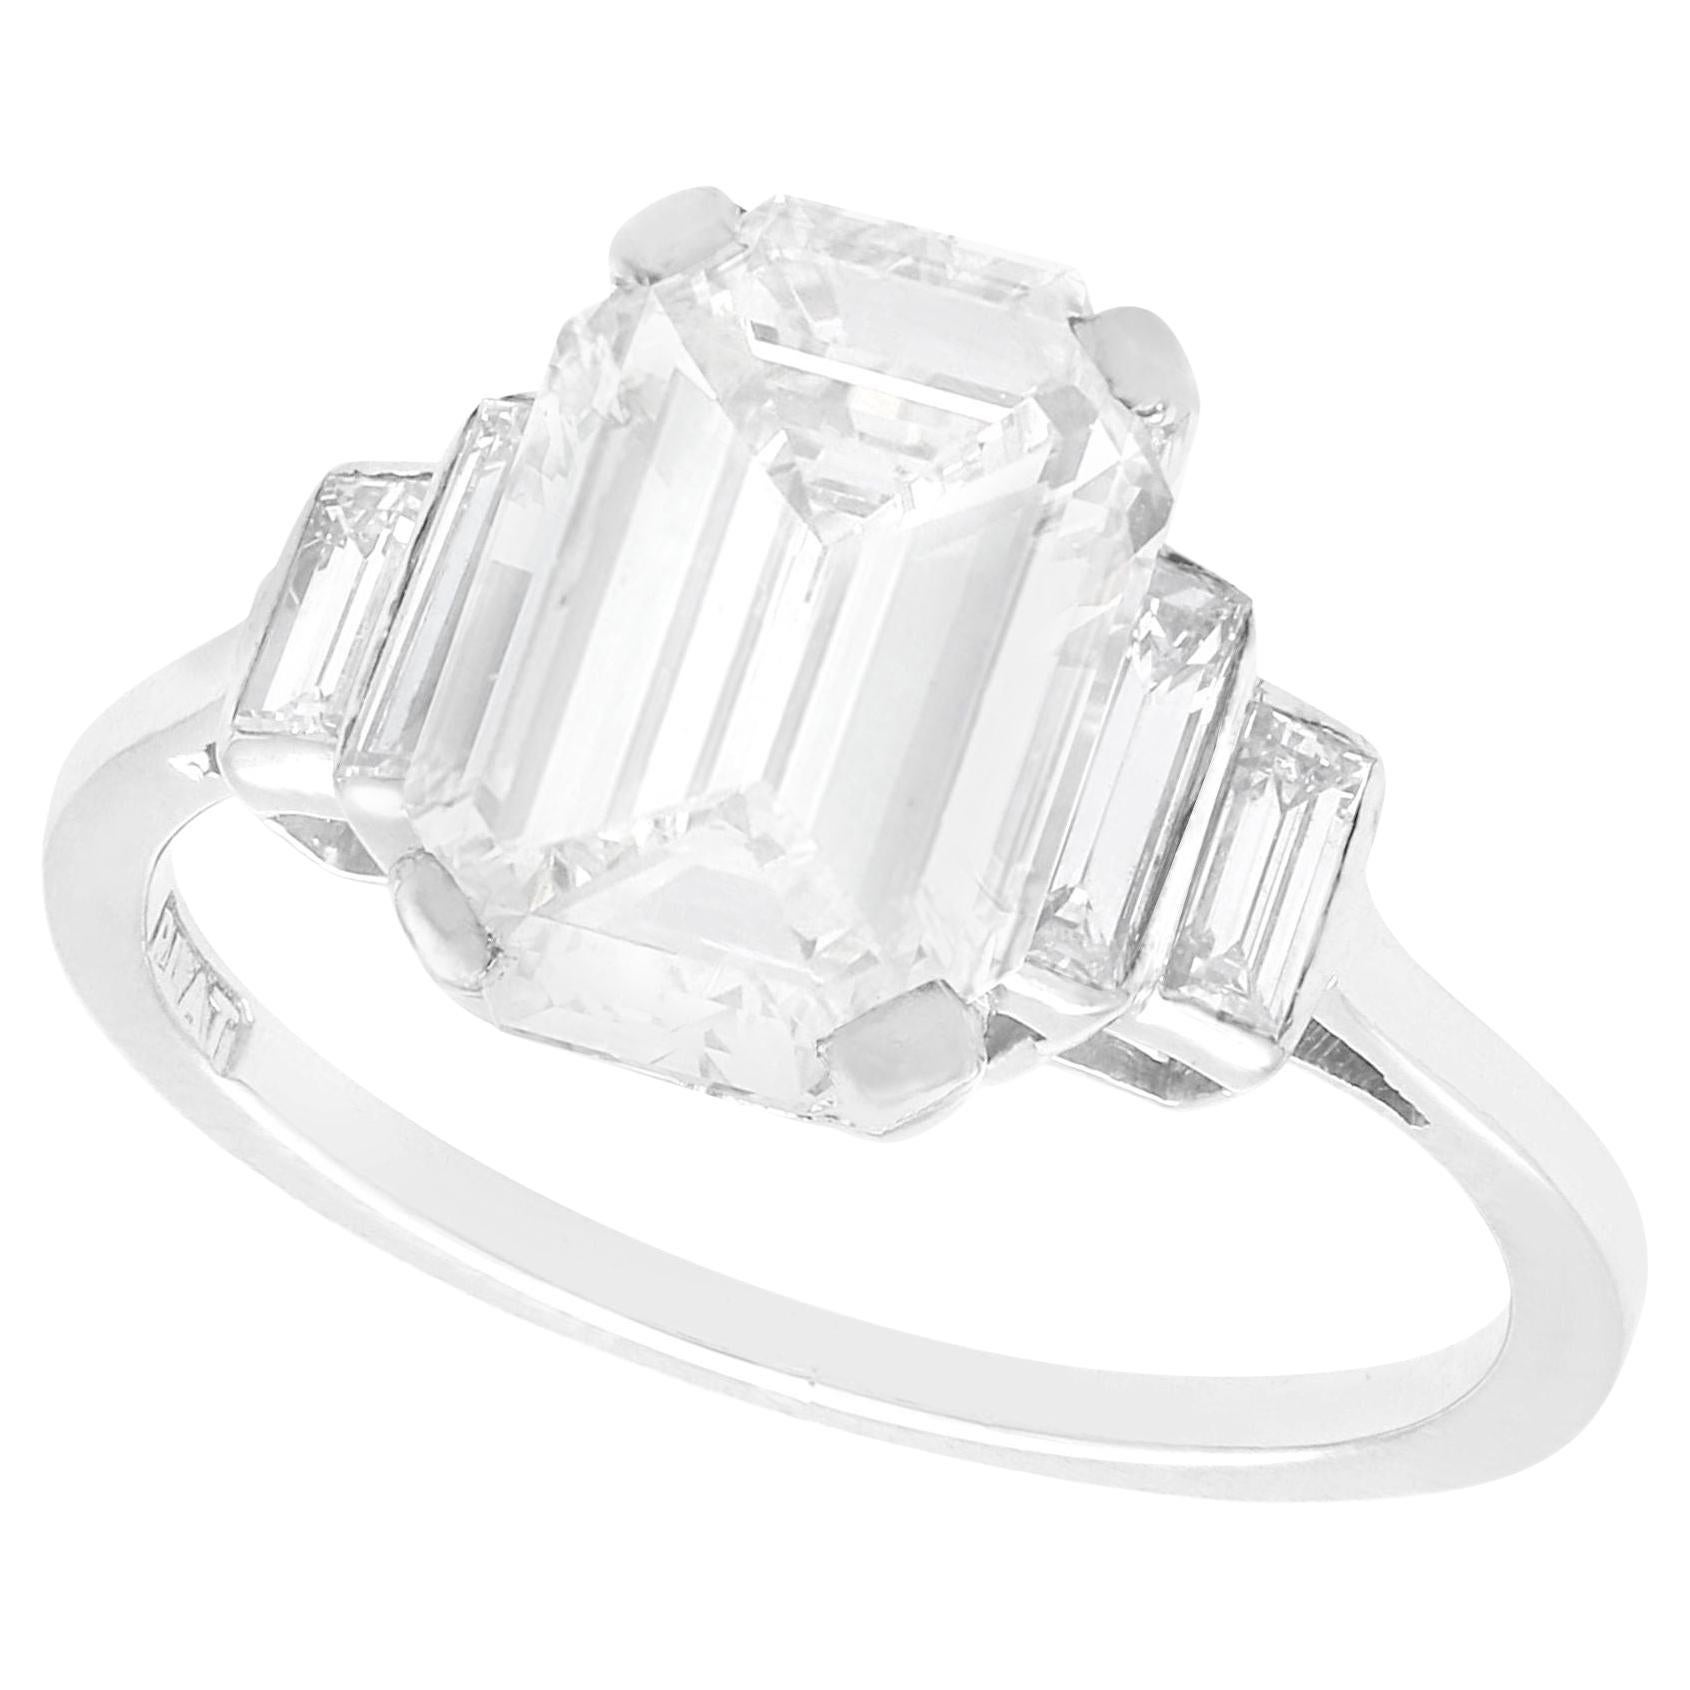 Art Deco 4.02 Carat Diamond and Platinum Solitaire Ring